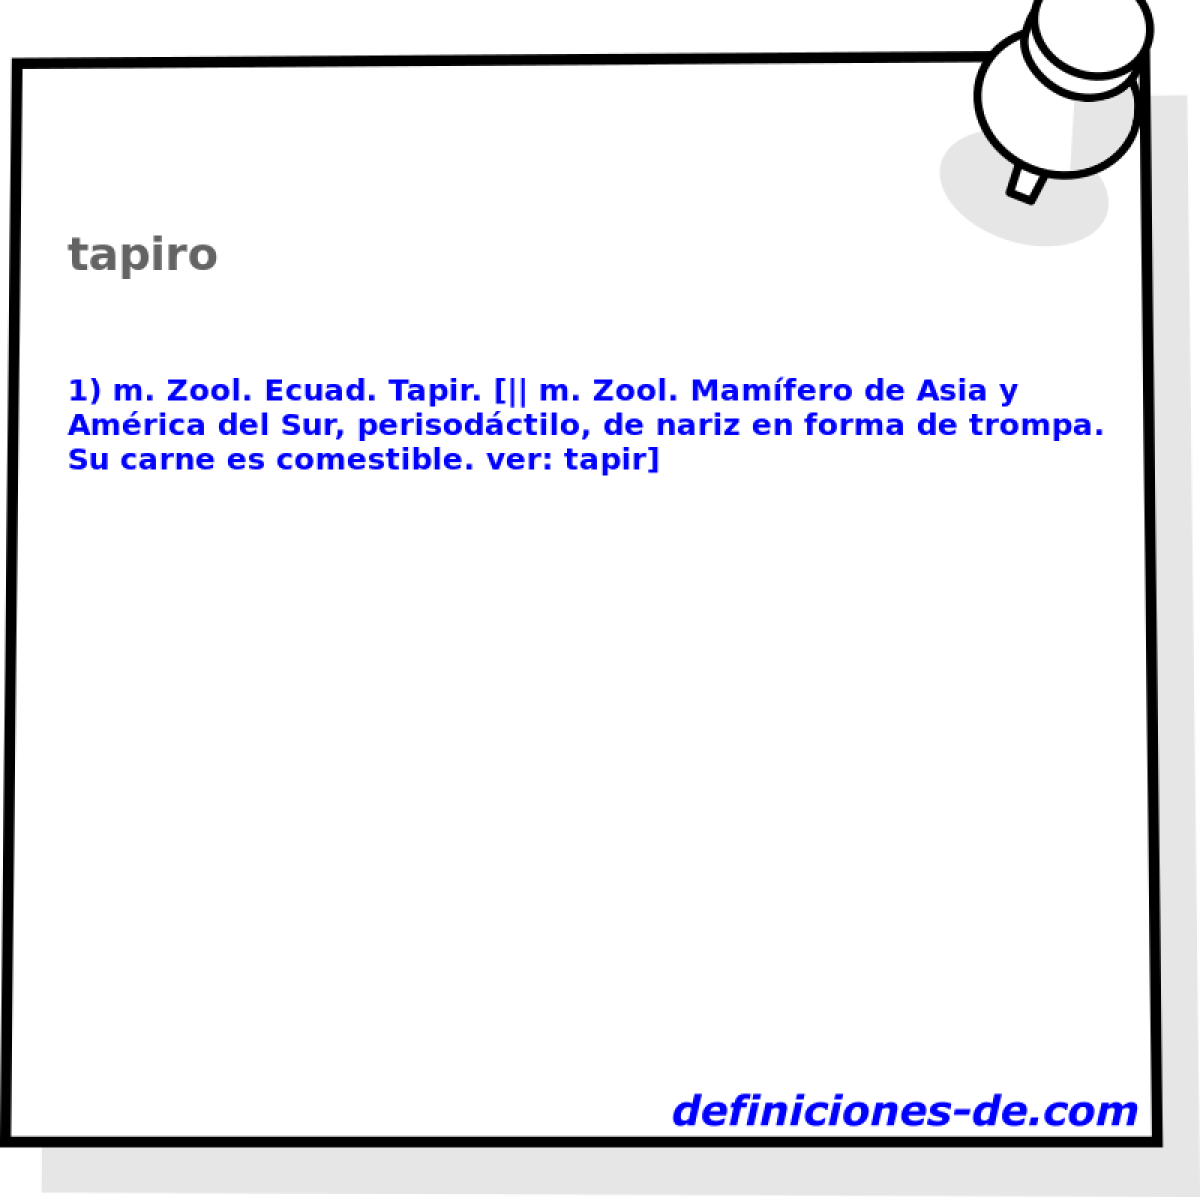 tapiro 